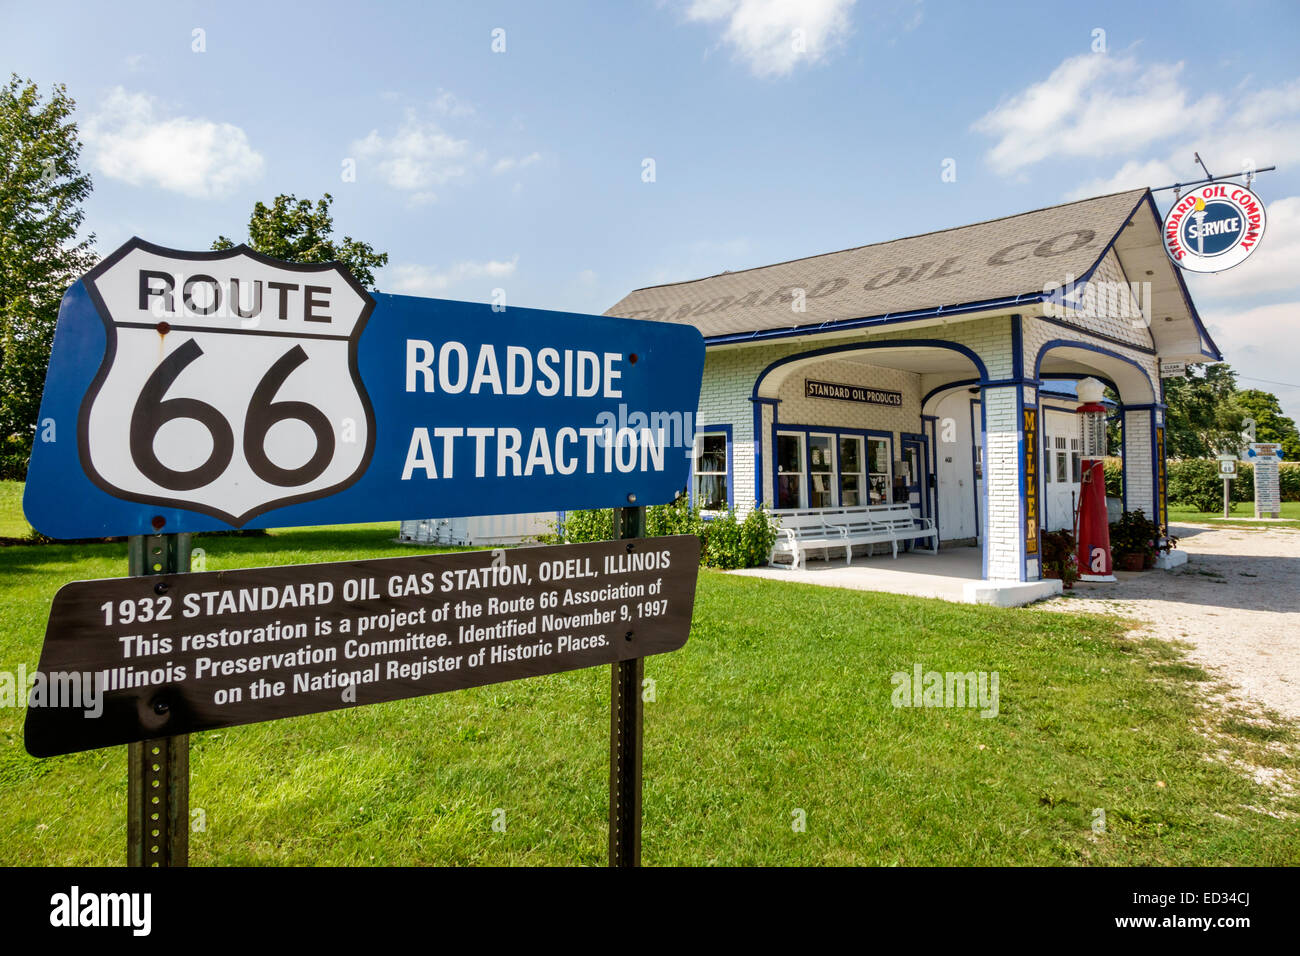 Illinois Odell, autostrada storica Route 66,1932 Standard Oil gas Station, benzina, segnaletica, strada, informazioni, IL140905053 Foto Stock